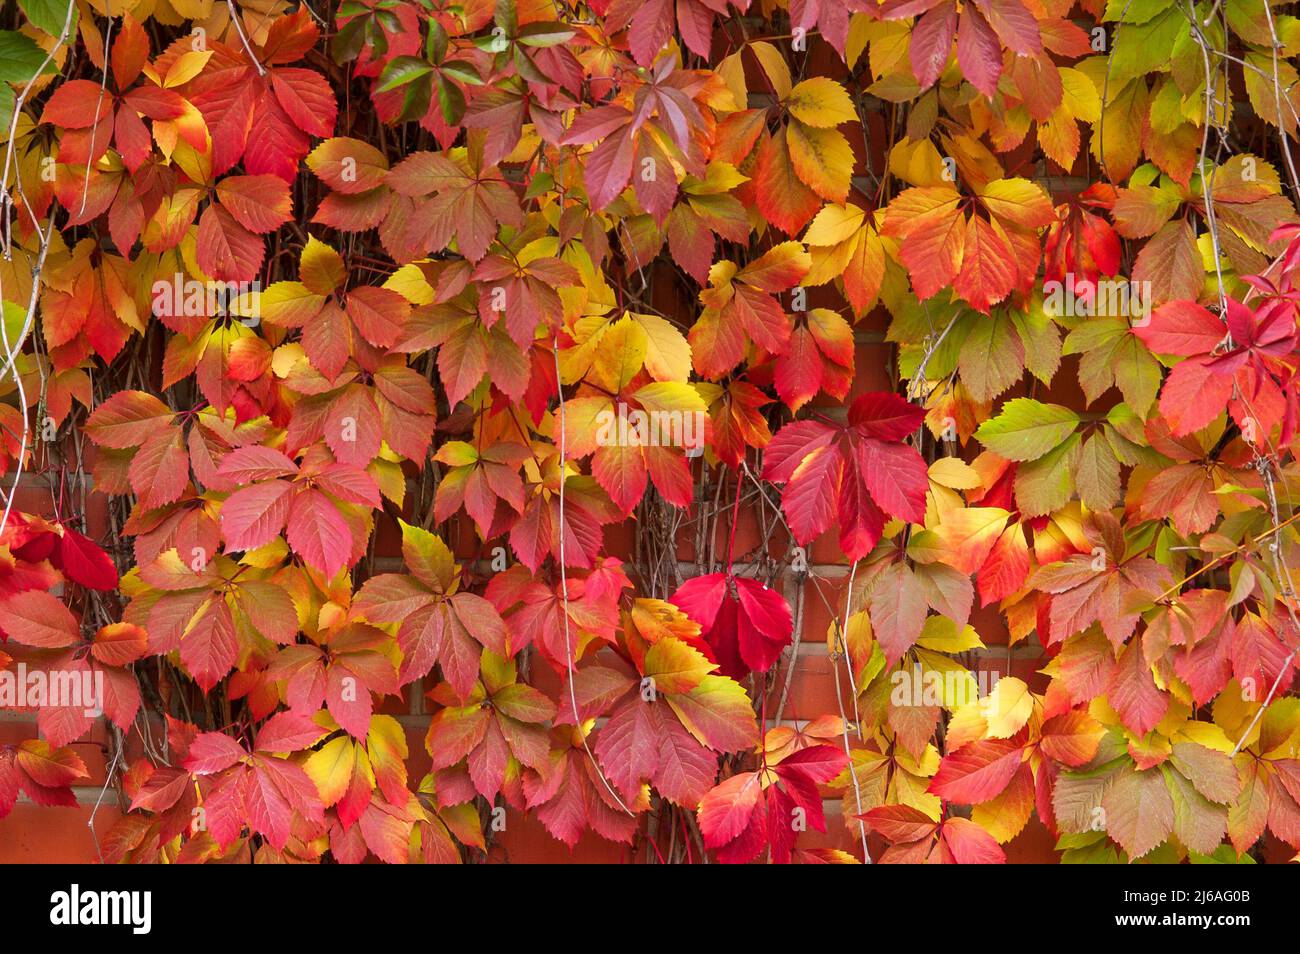 False Virginia creeper Parthenocissus inserta foliage in autumn colors Stock Photo